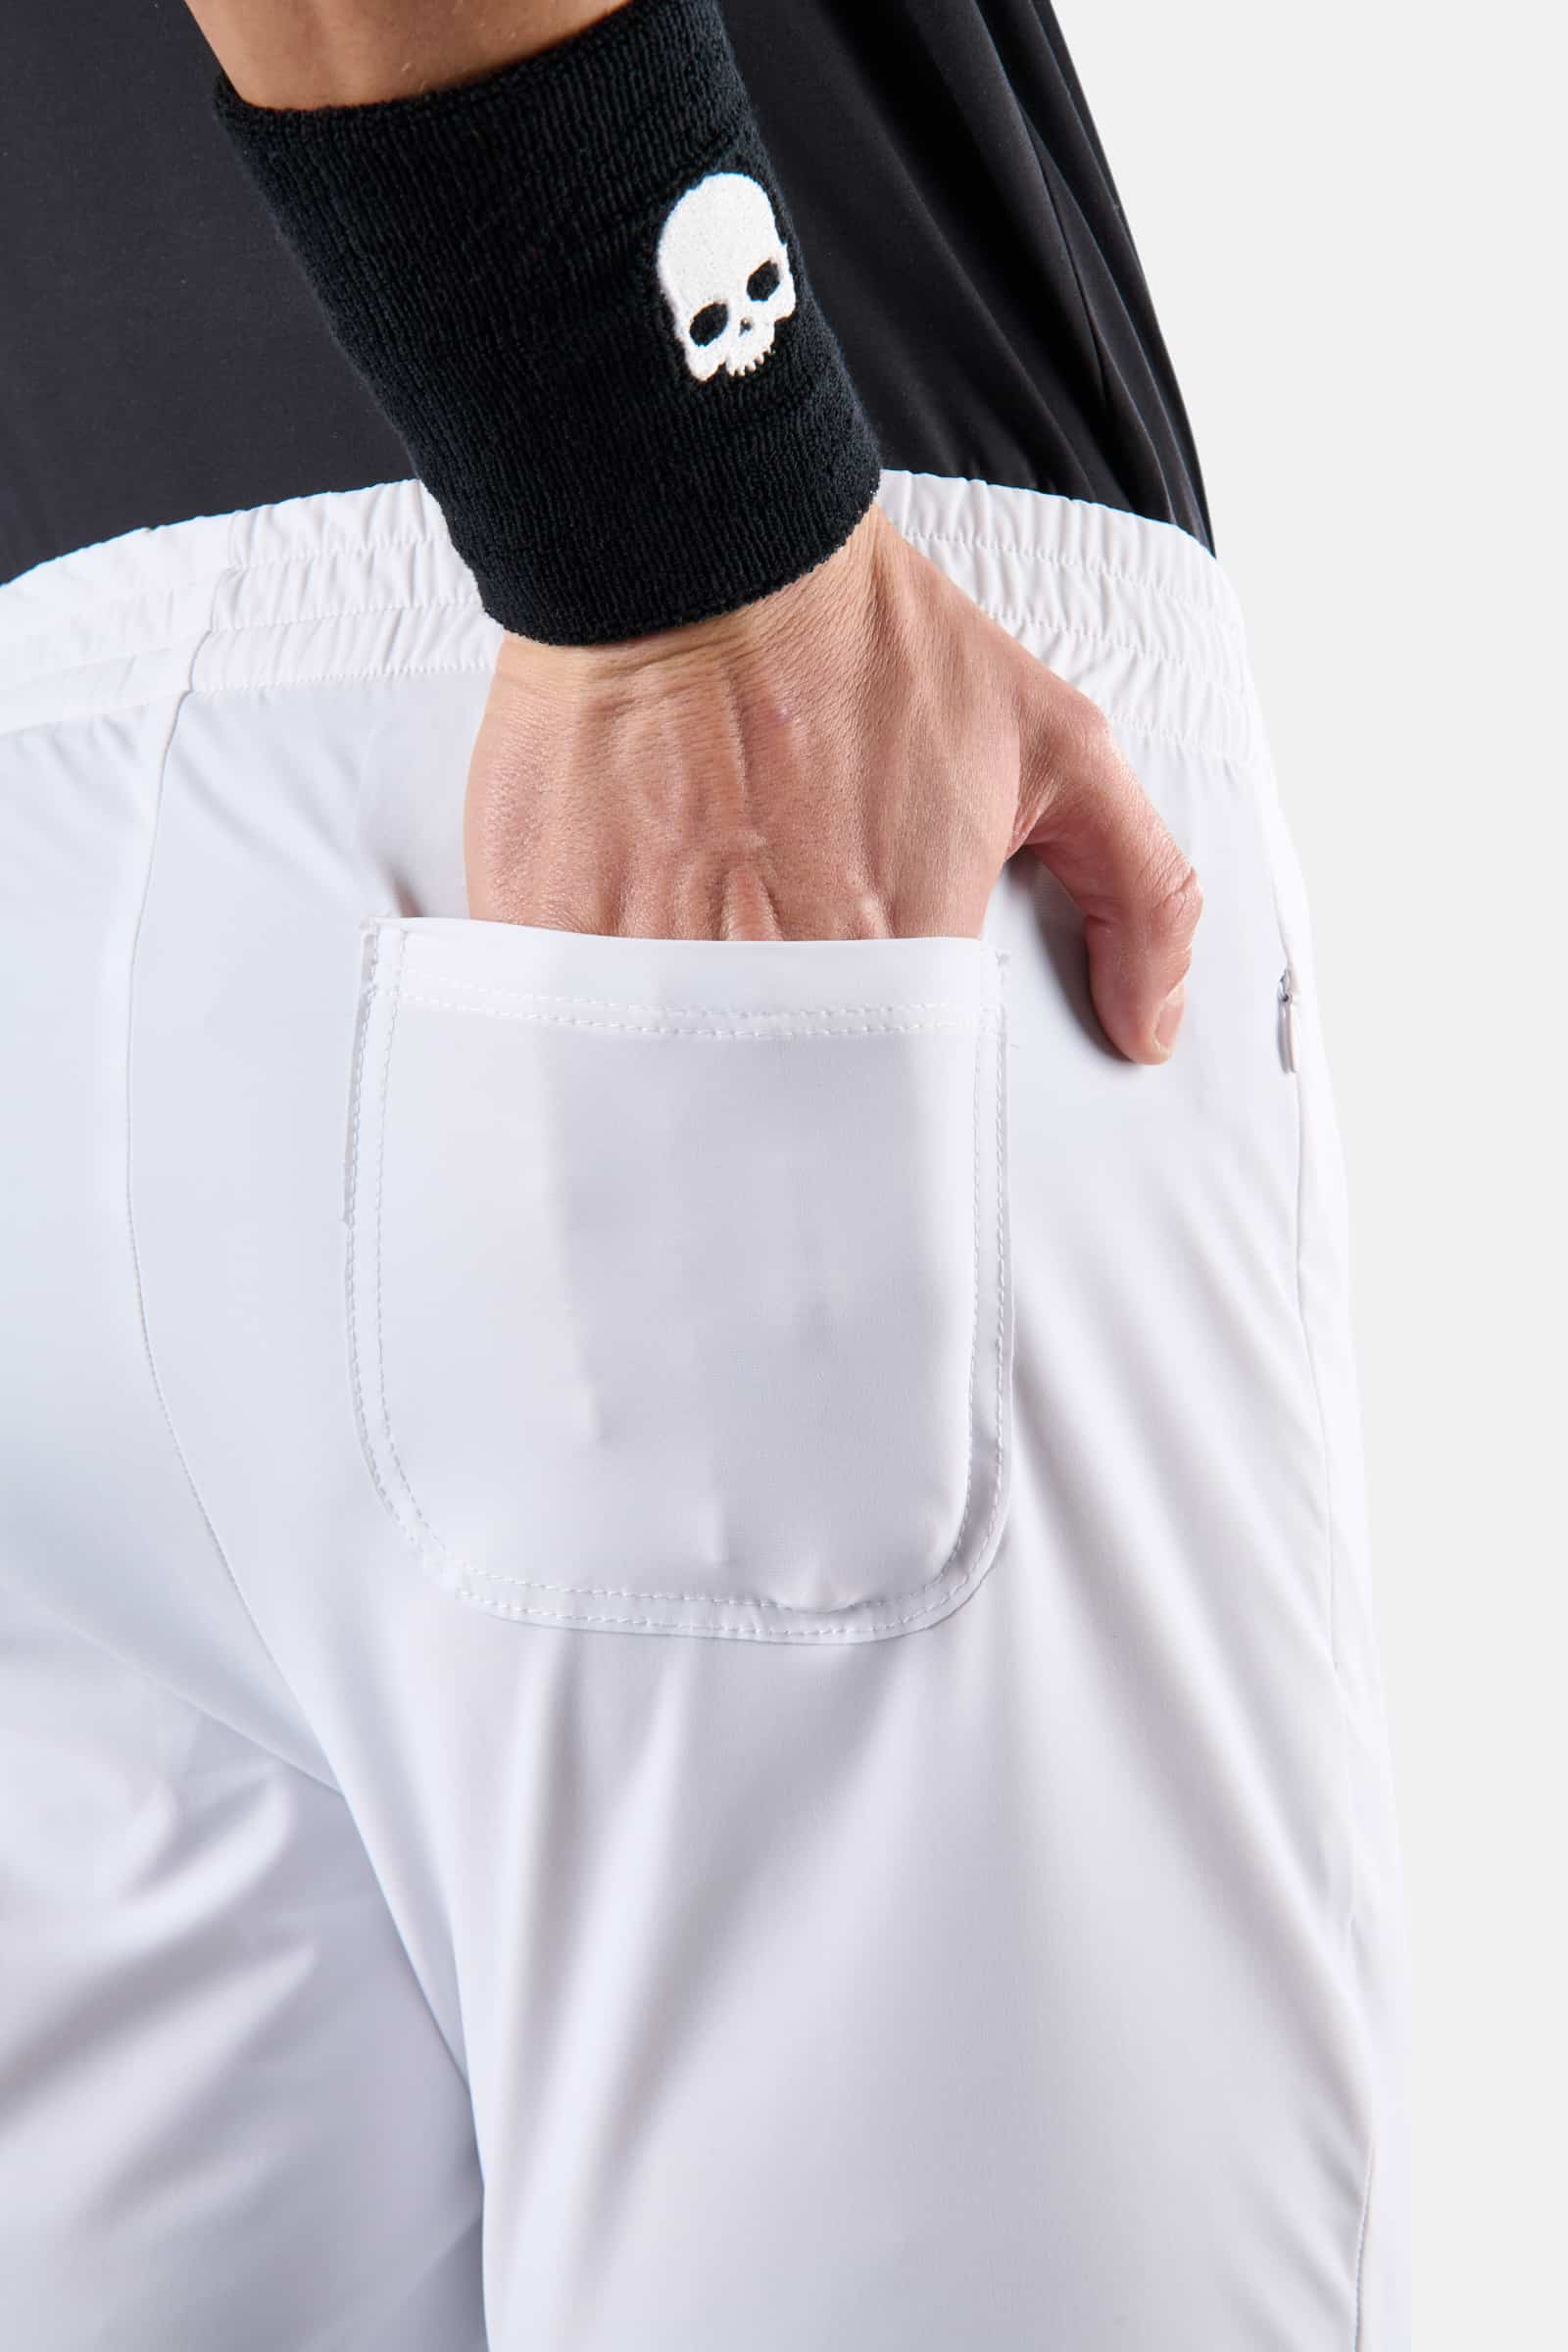 TECH PANTS SKULL - WHITE - Hydrogen - Luxury Sportwear